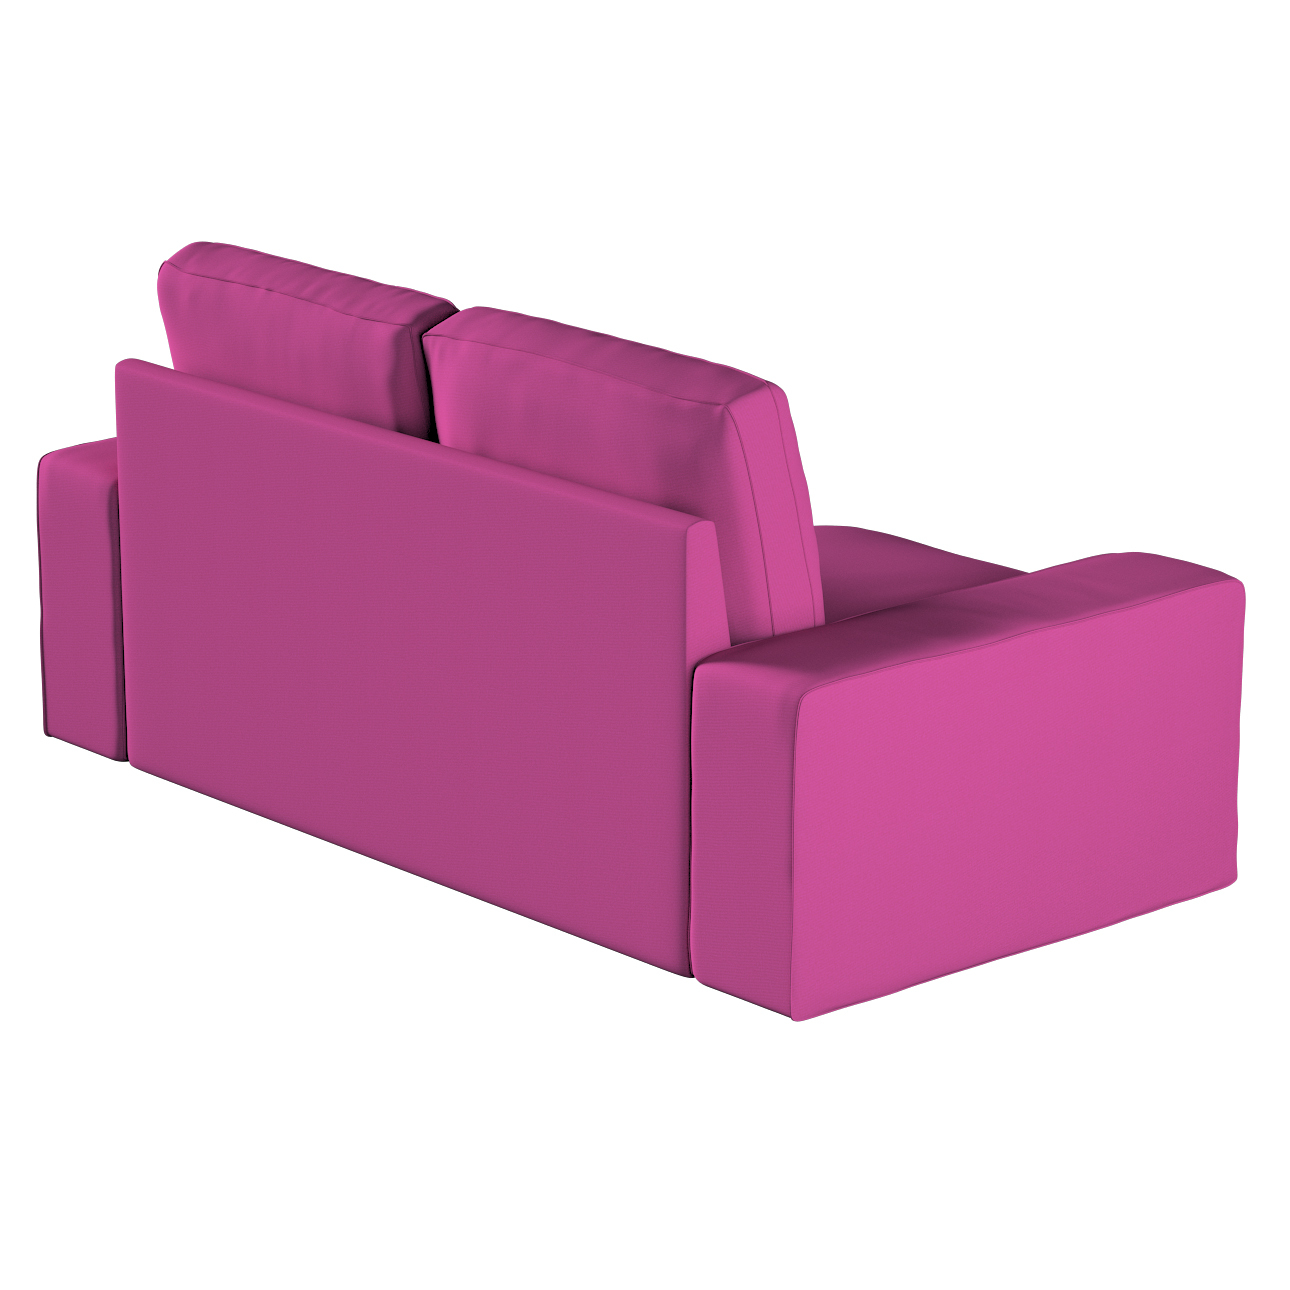 Bezug für Kivik 2-Sitzer Sofa, amarant, Bezug für Sofa Kivik 2-Sitzer, Etna günstig online kaufen